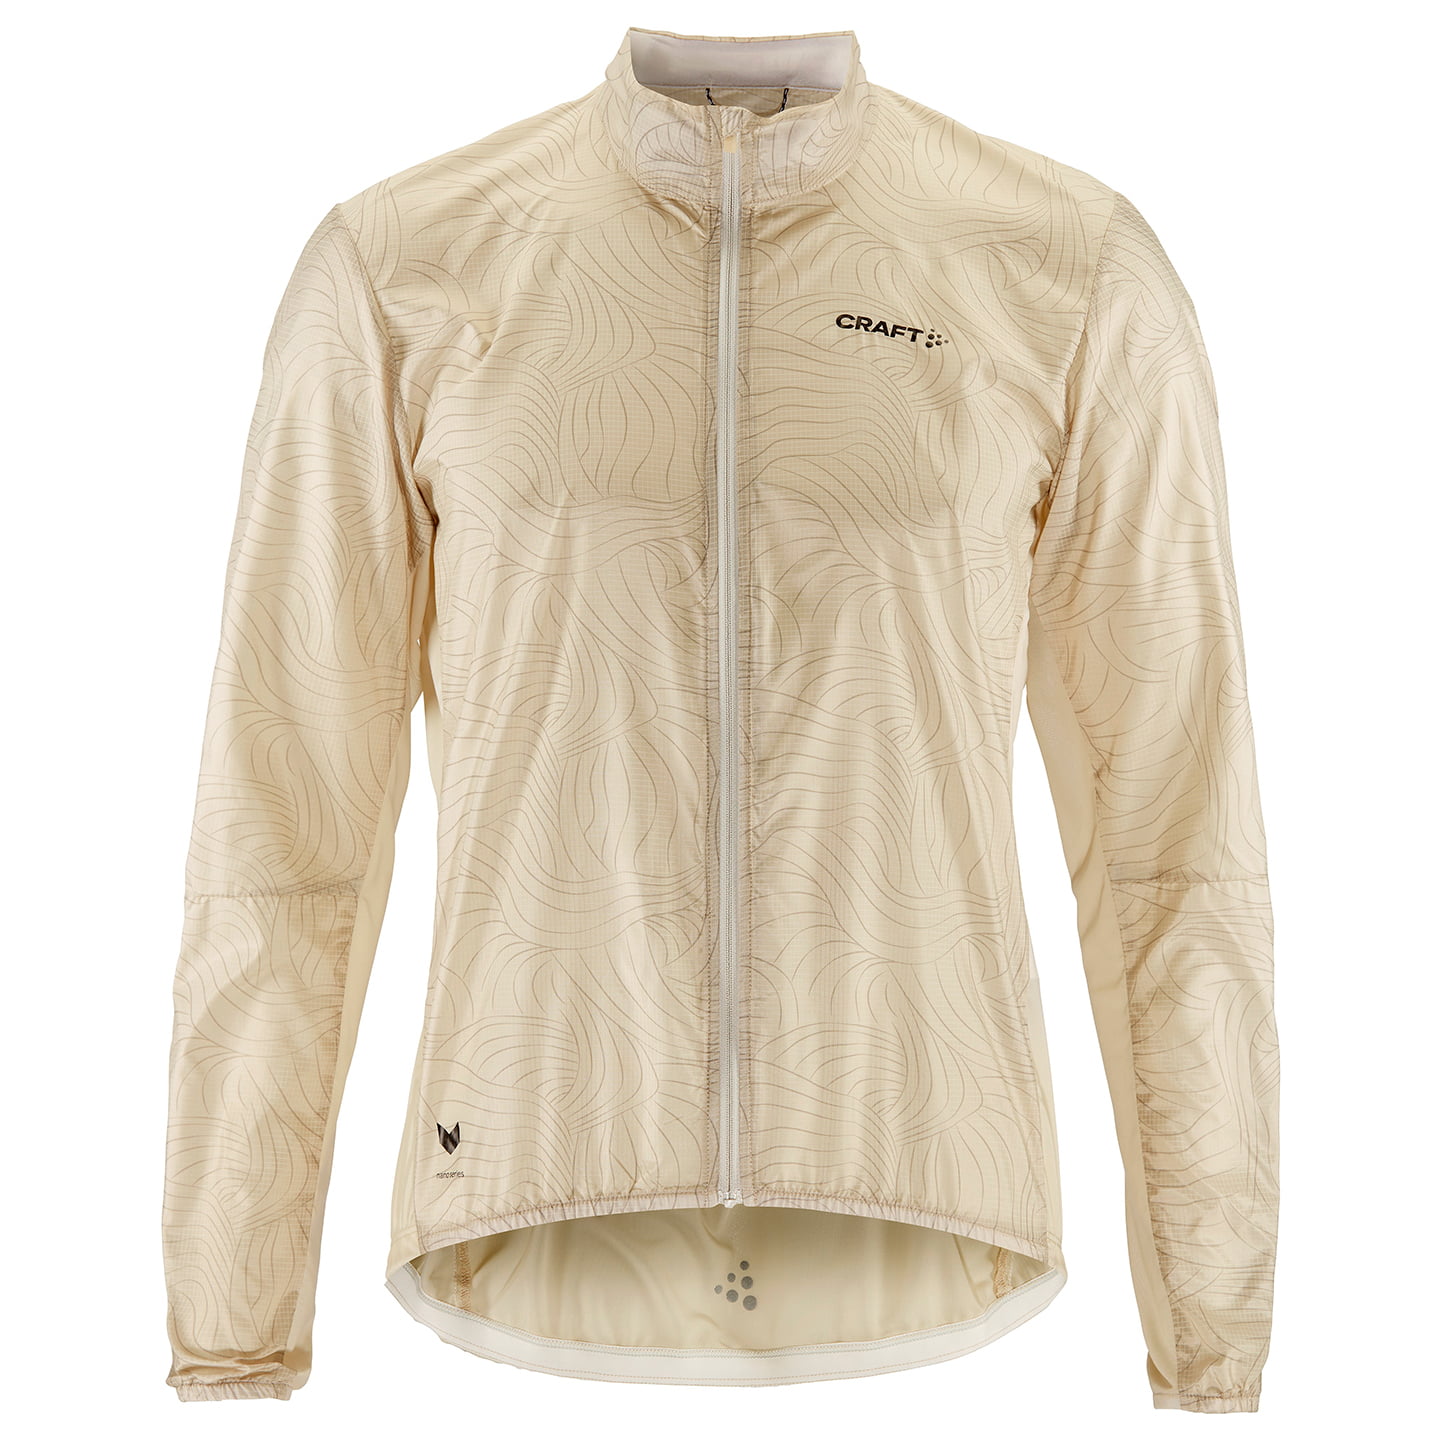 CRAFT Pro Nano Wind Jacket, for men, size M, Bike jacket, Cycling clothing